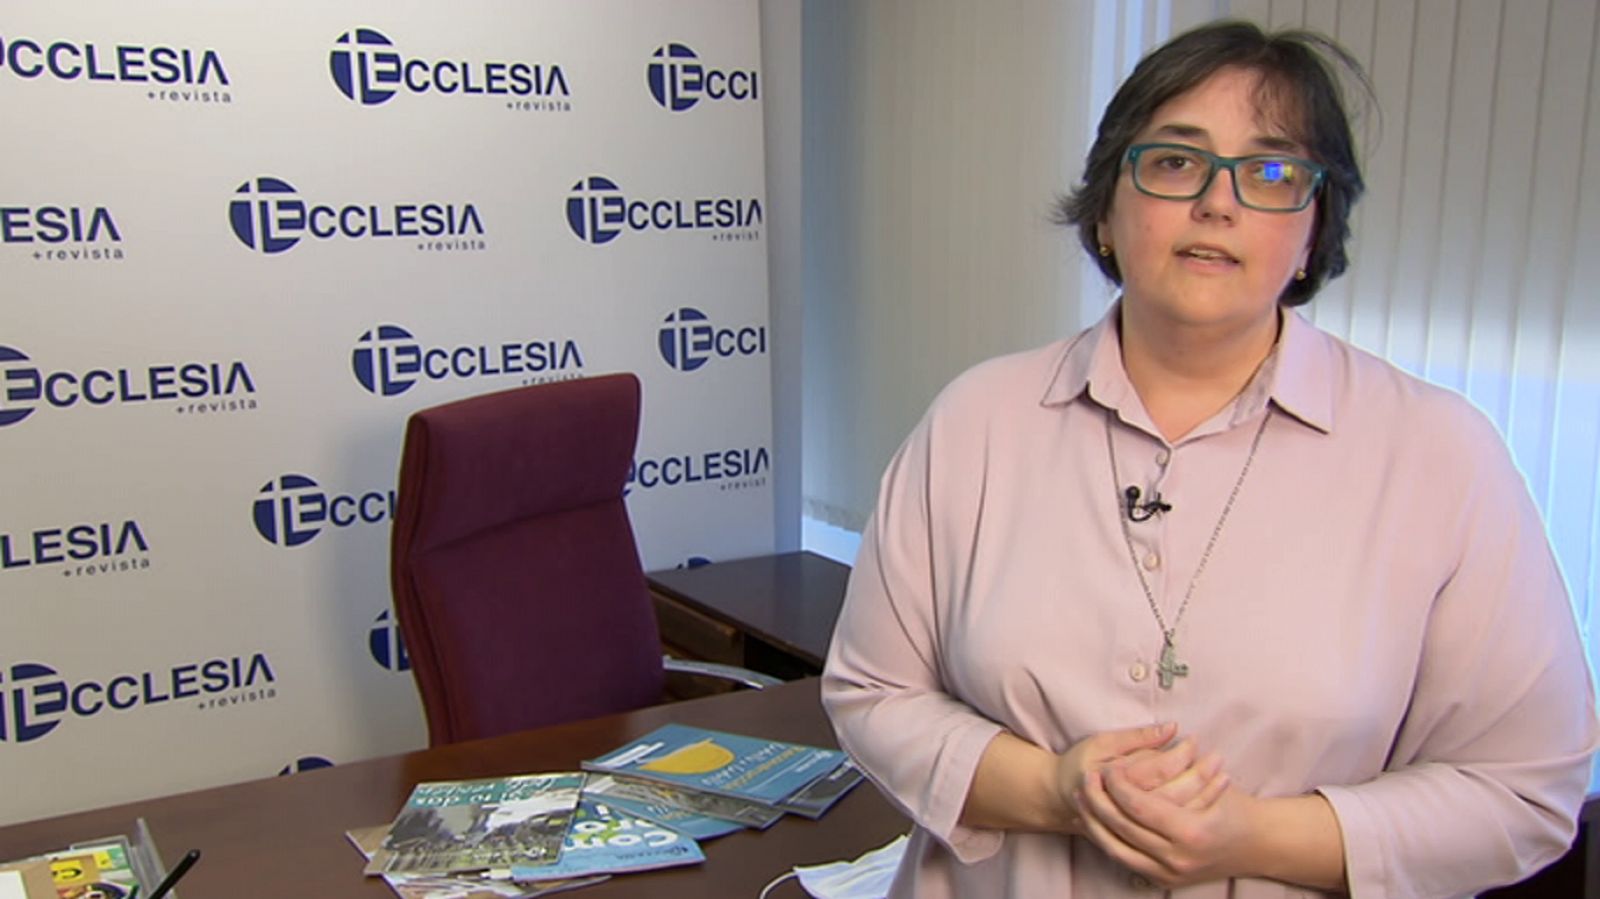 Testimonio - Ecclesia Digital - RTVE.es